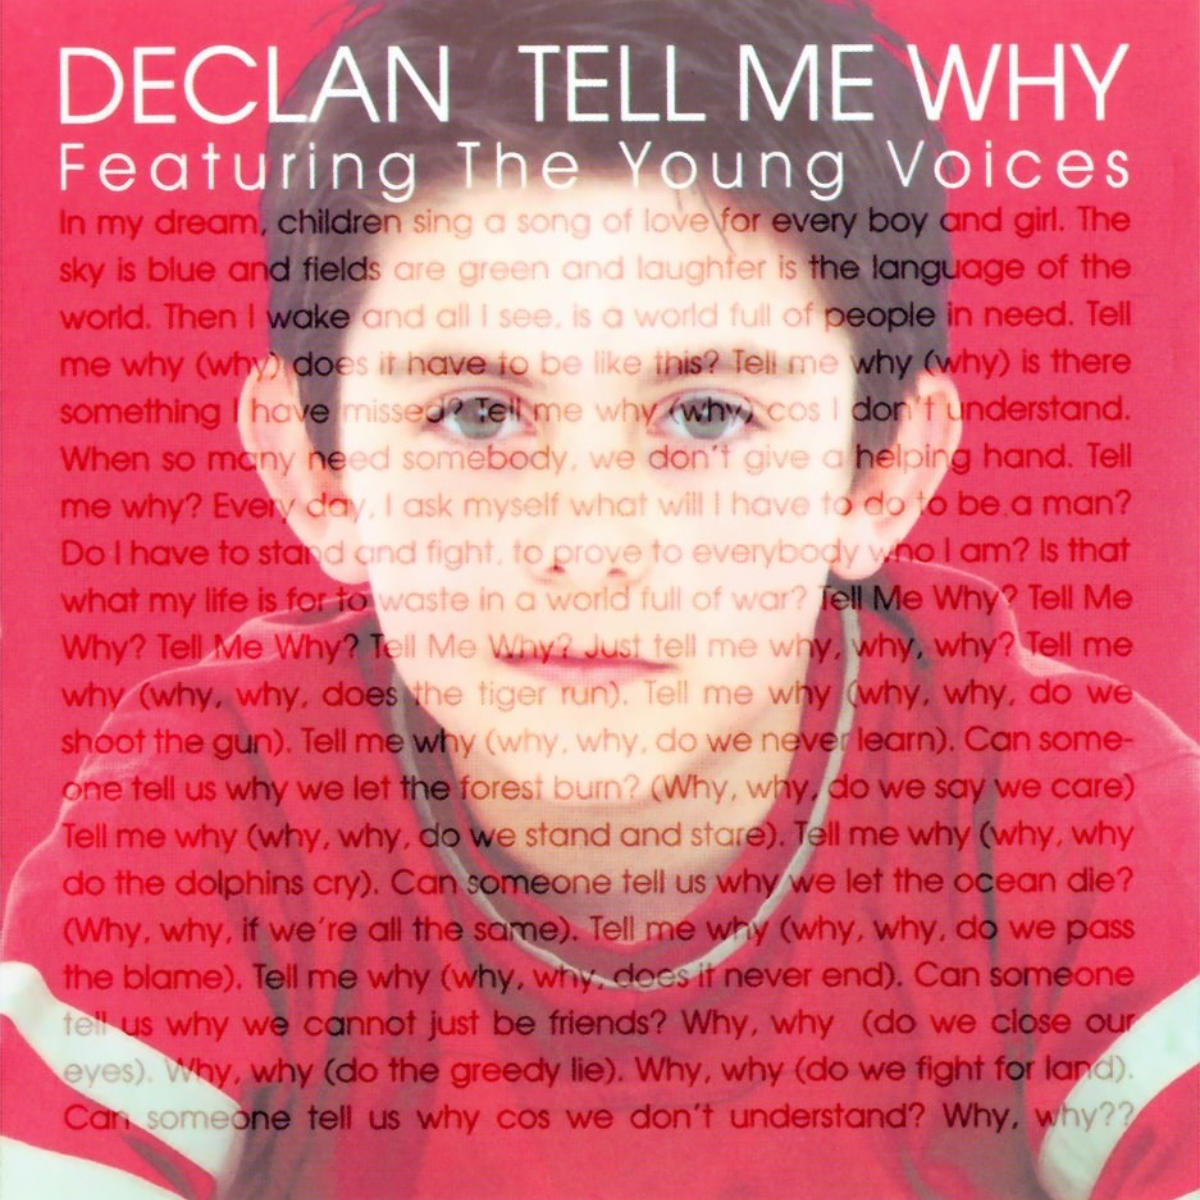 Tell me why песня перевод. Tell me why Деклан Гэлбрейт. Tell me why песня Declan Galbraith. Tell me why песня. Declan Galbraith "tell me why?" Перевод.